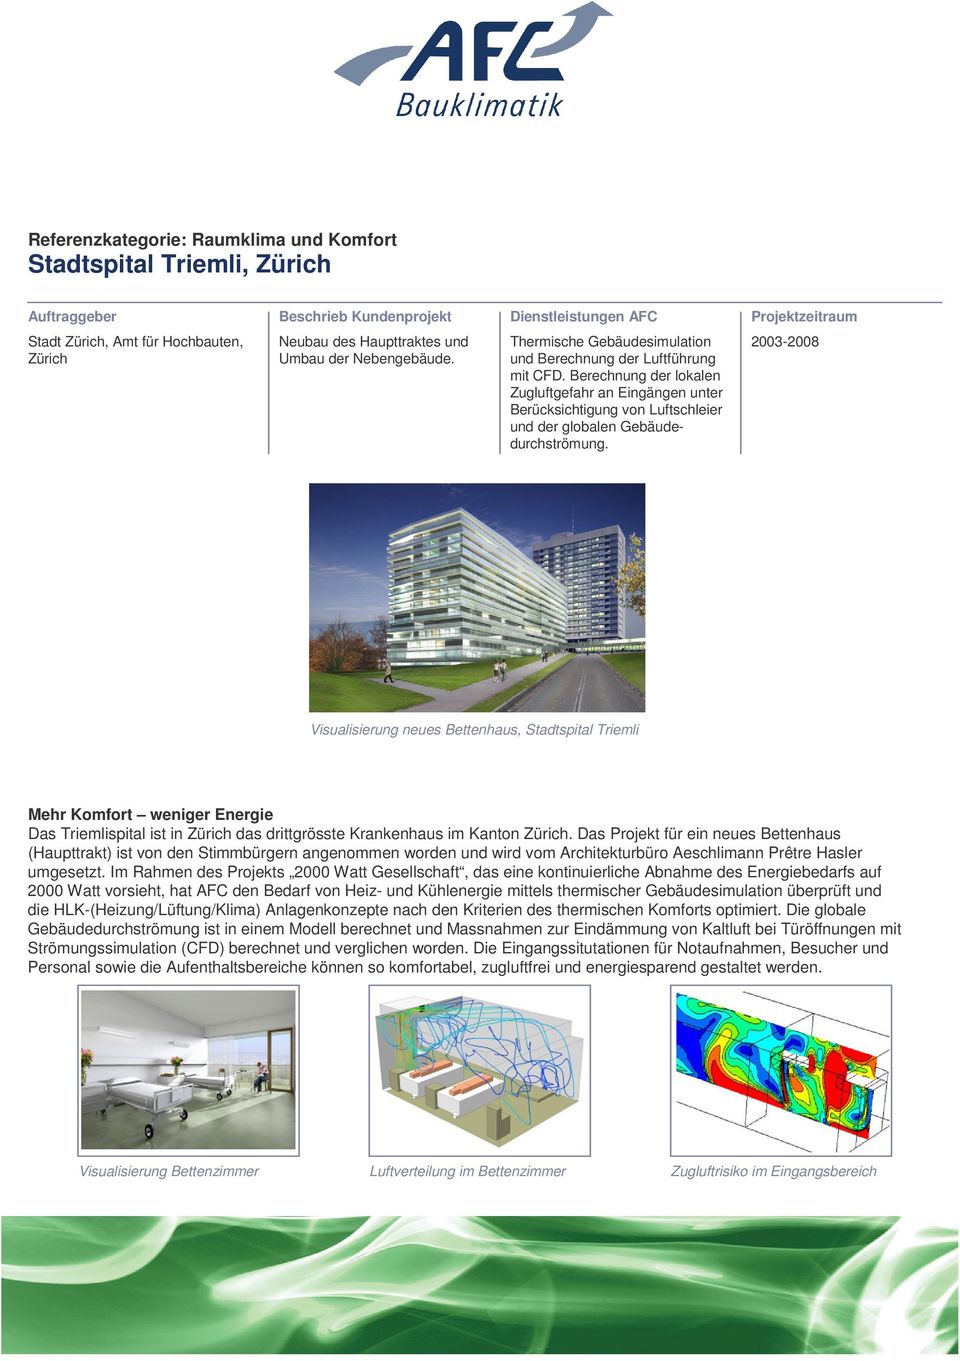 2003-2008 Visualisierung neues Bettenhaus, Stadtspital Triemli Mehr Komfort weniger Energie Das Triemlispital ist in Zürich das drittgrösste Krankenhaus im Kanton Zürich.